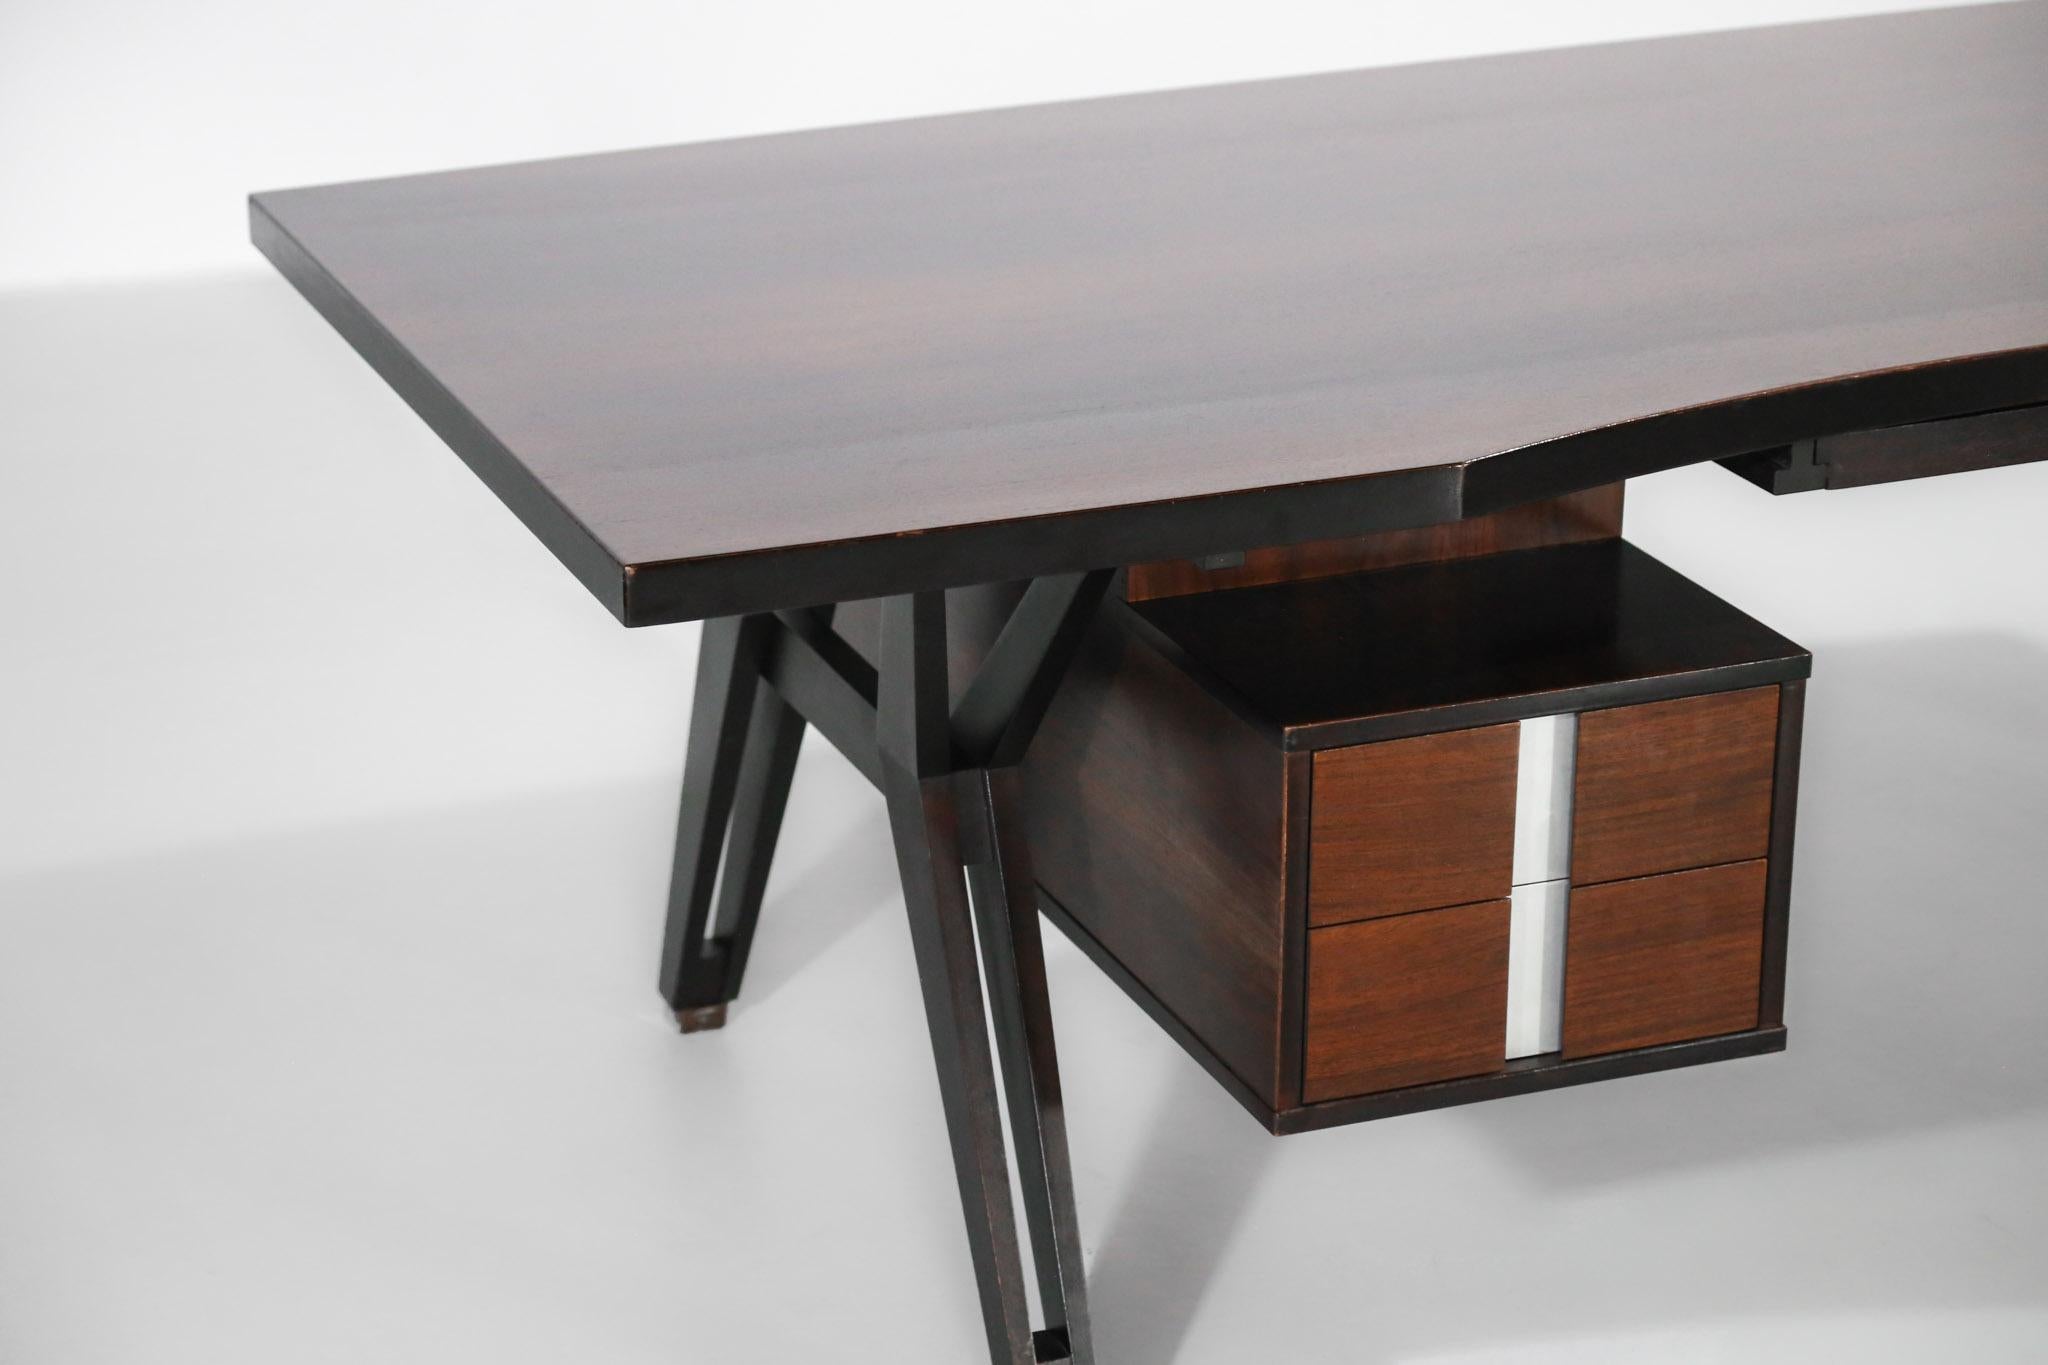 20th Century Large Ico Parisi Desk for MIM, Italian Design